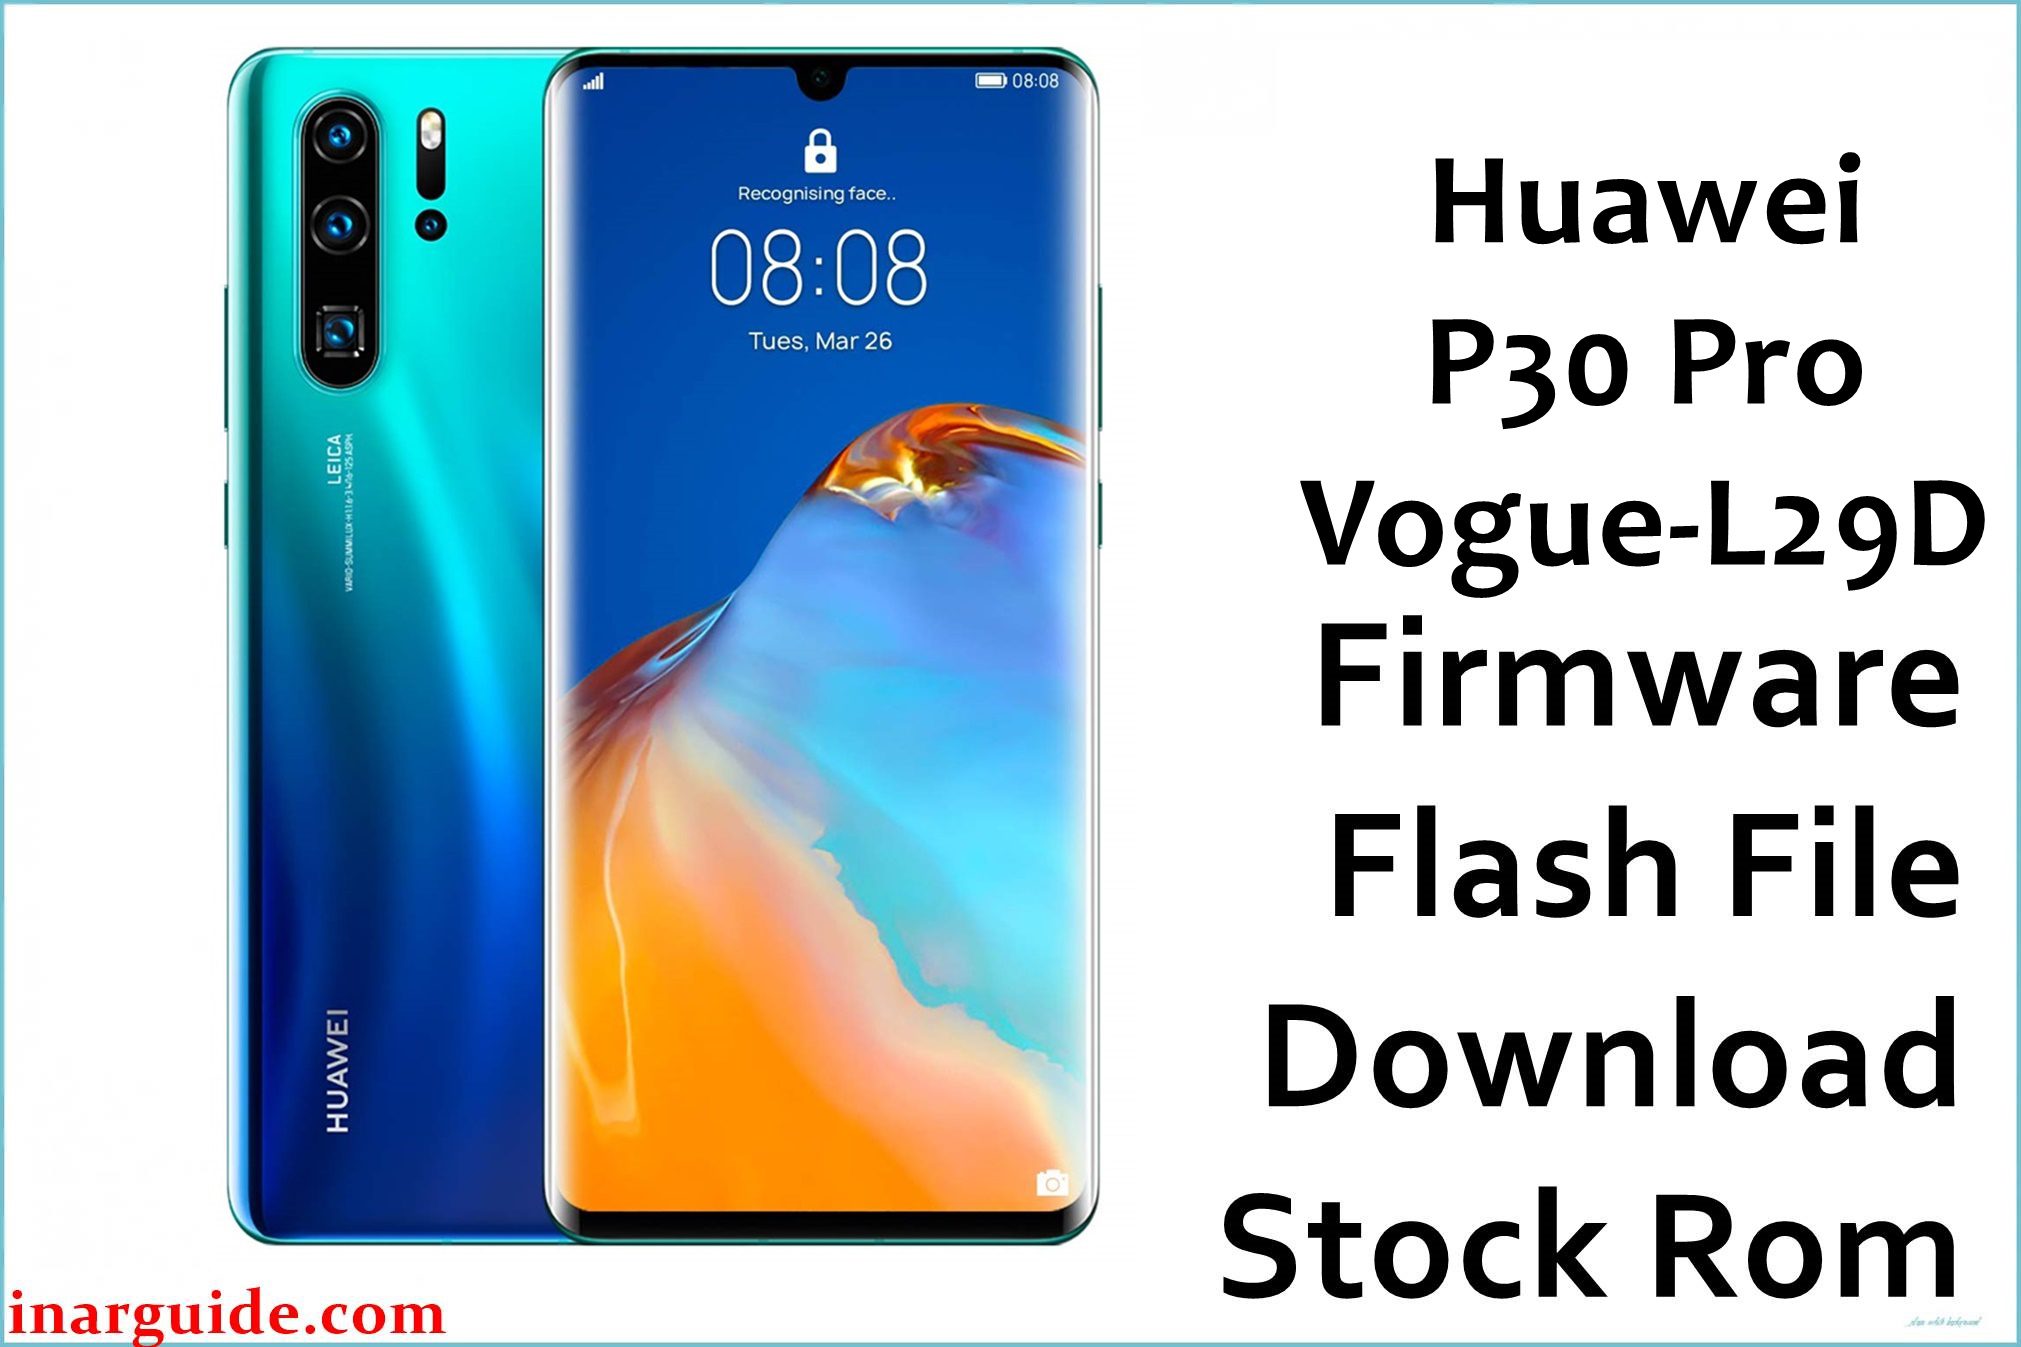 Huawei P30 Pro Vogue L29D